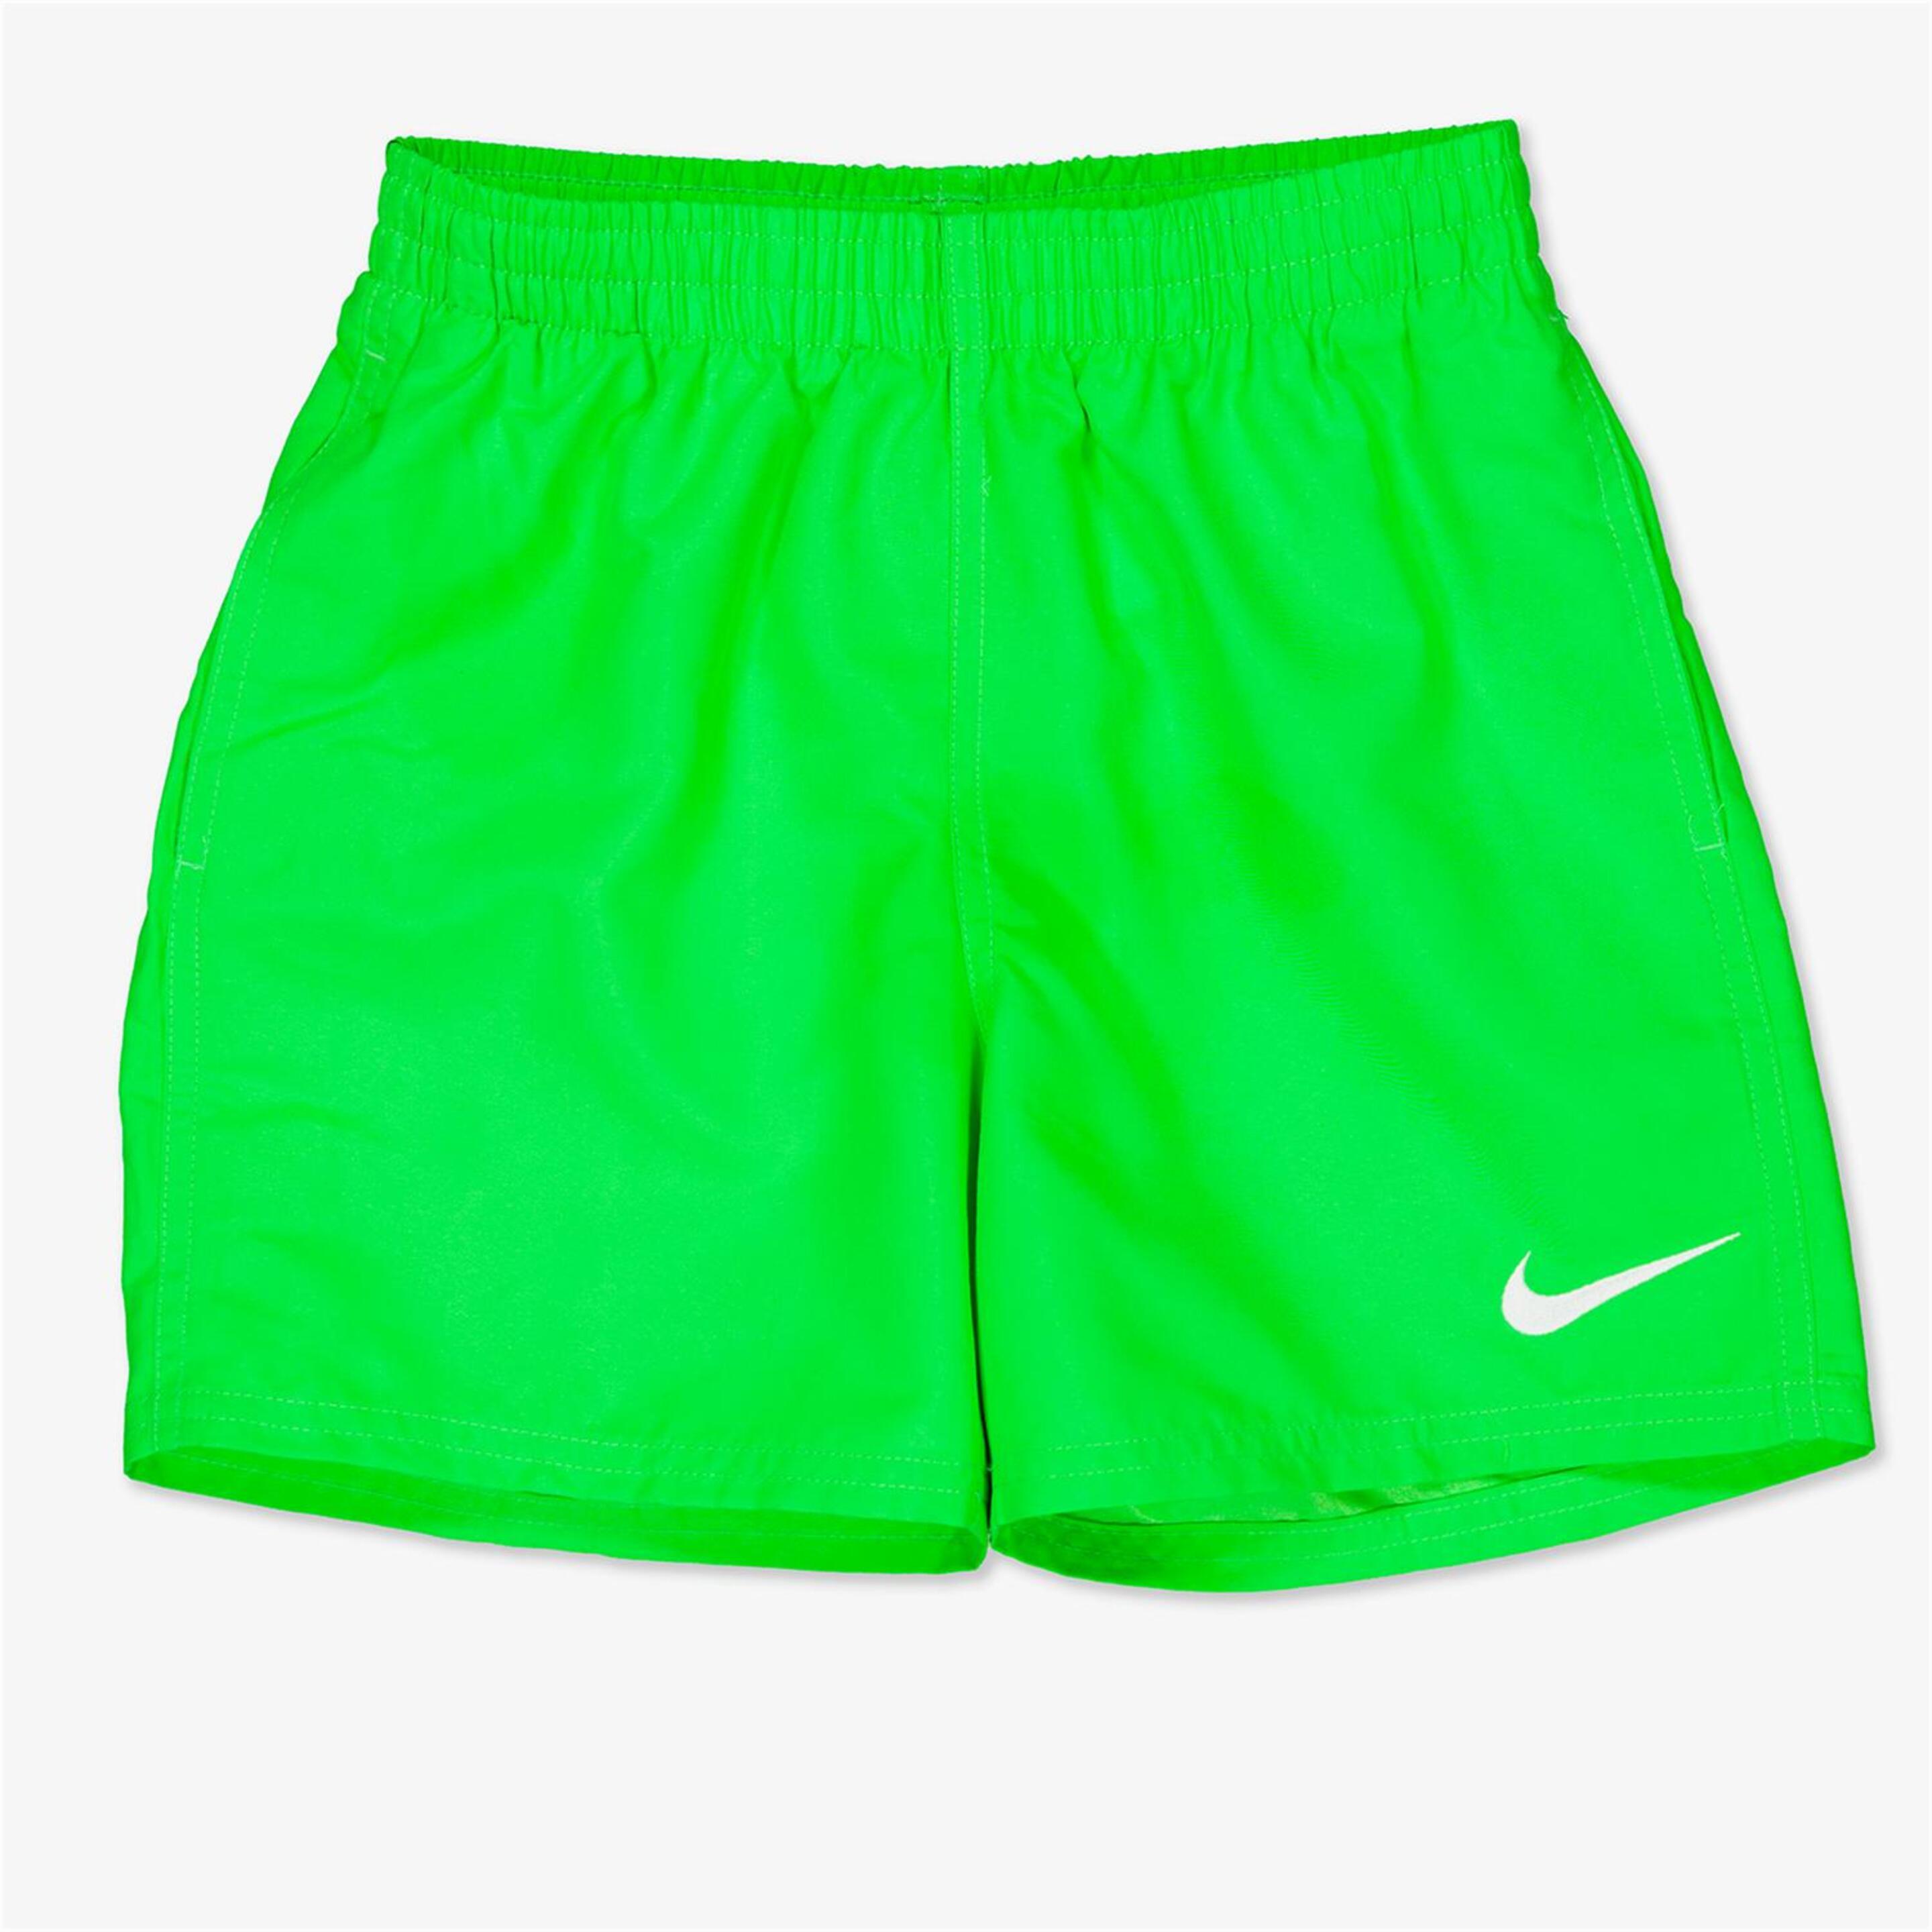 Bañador Nike - verde - Bañador Niño